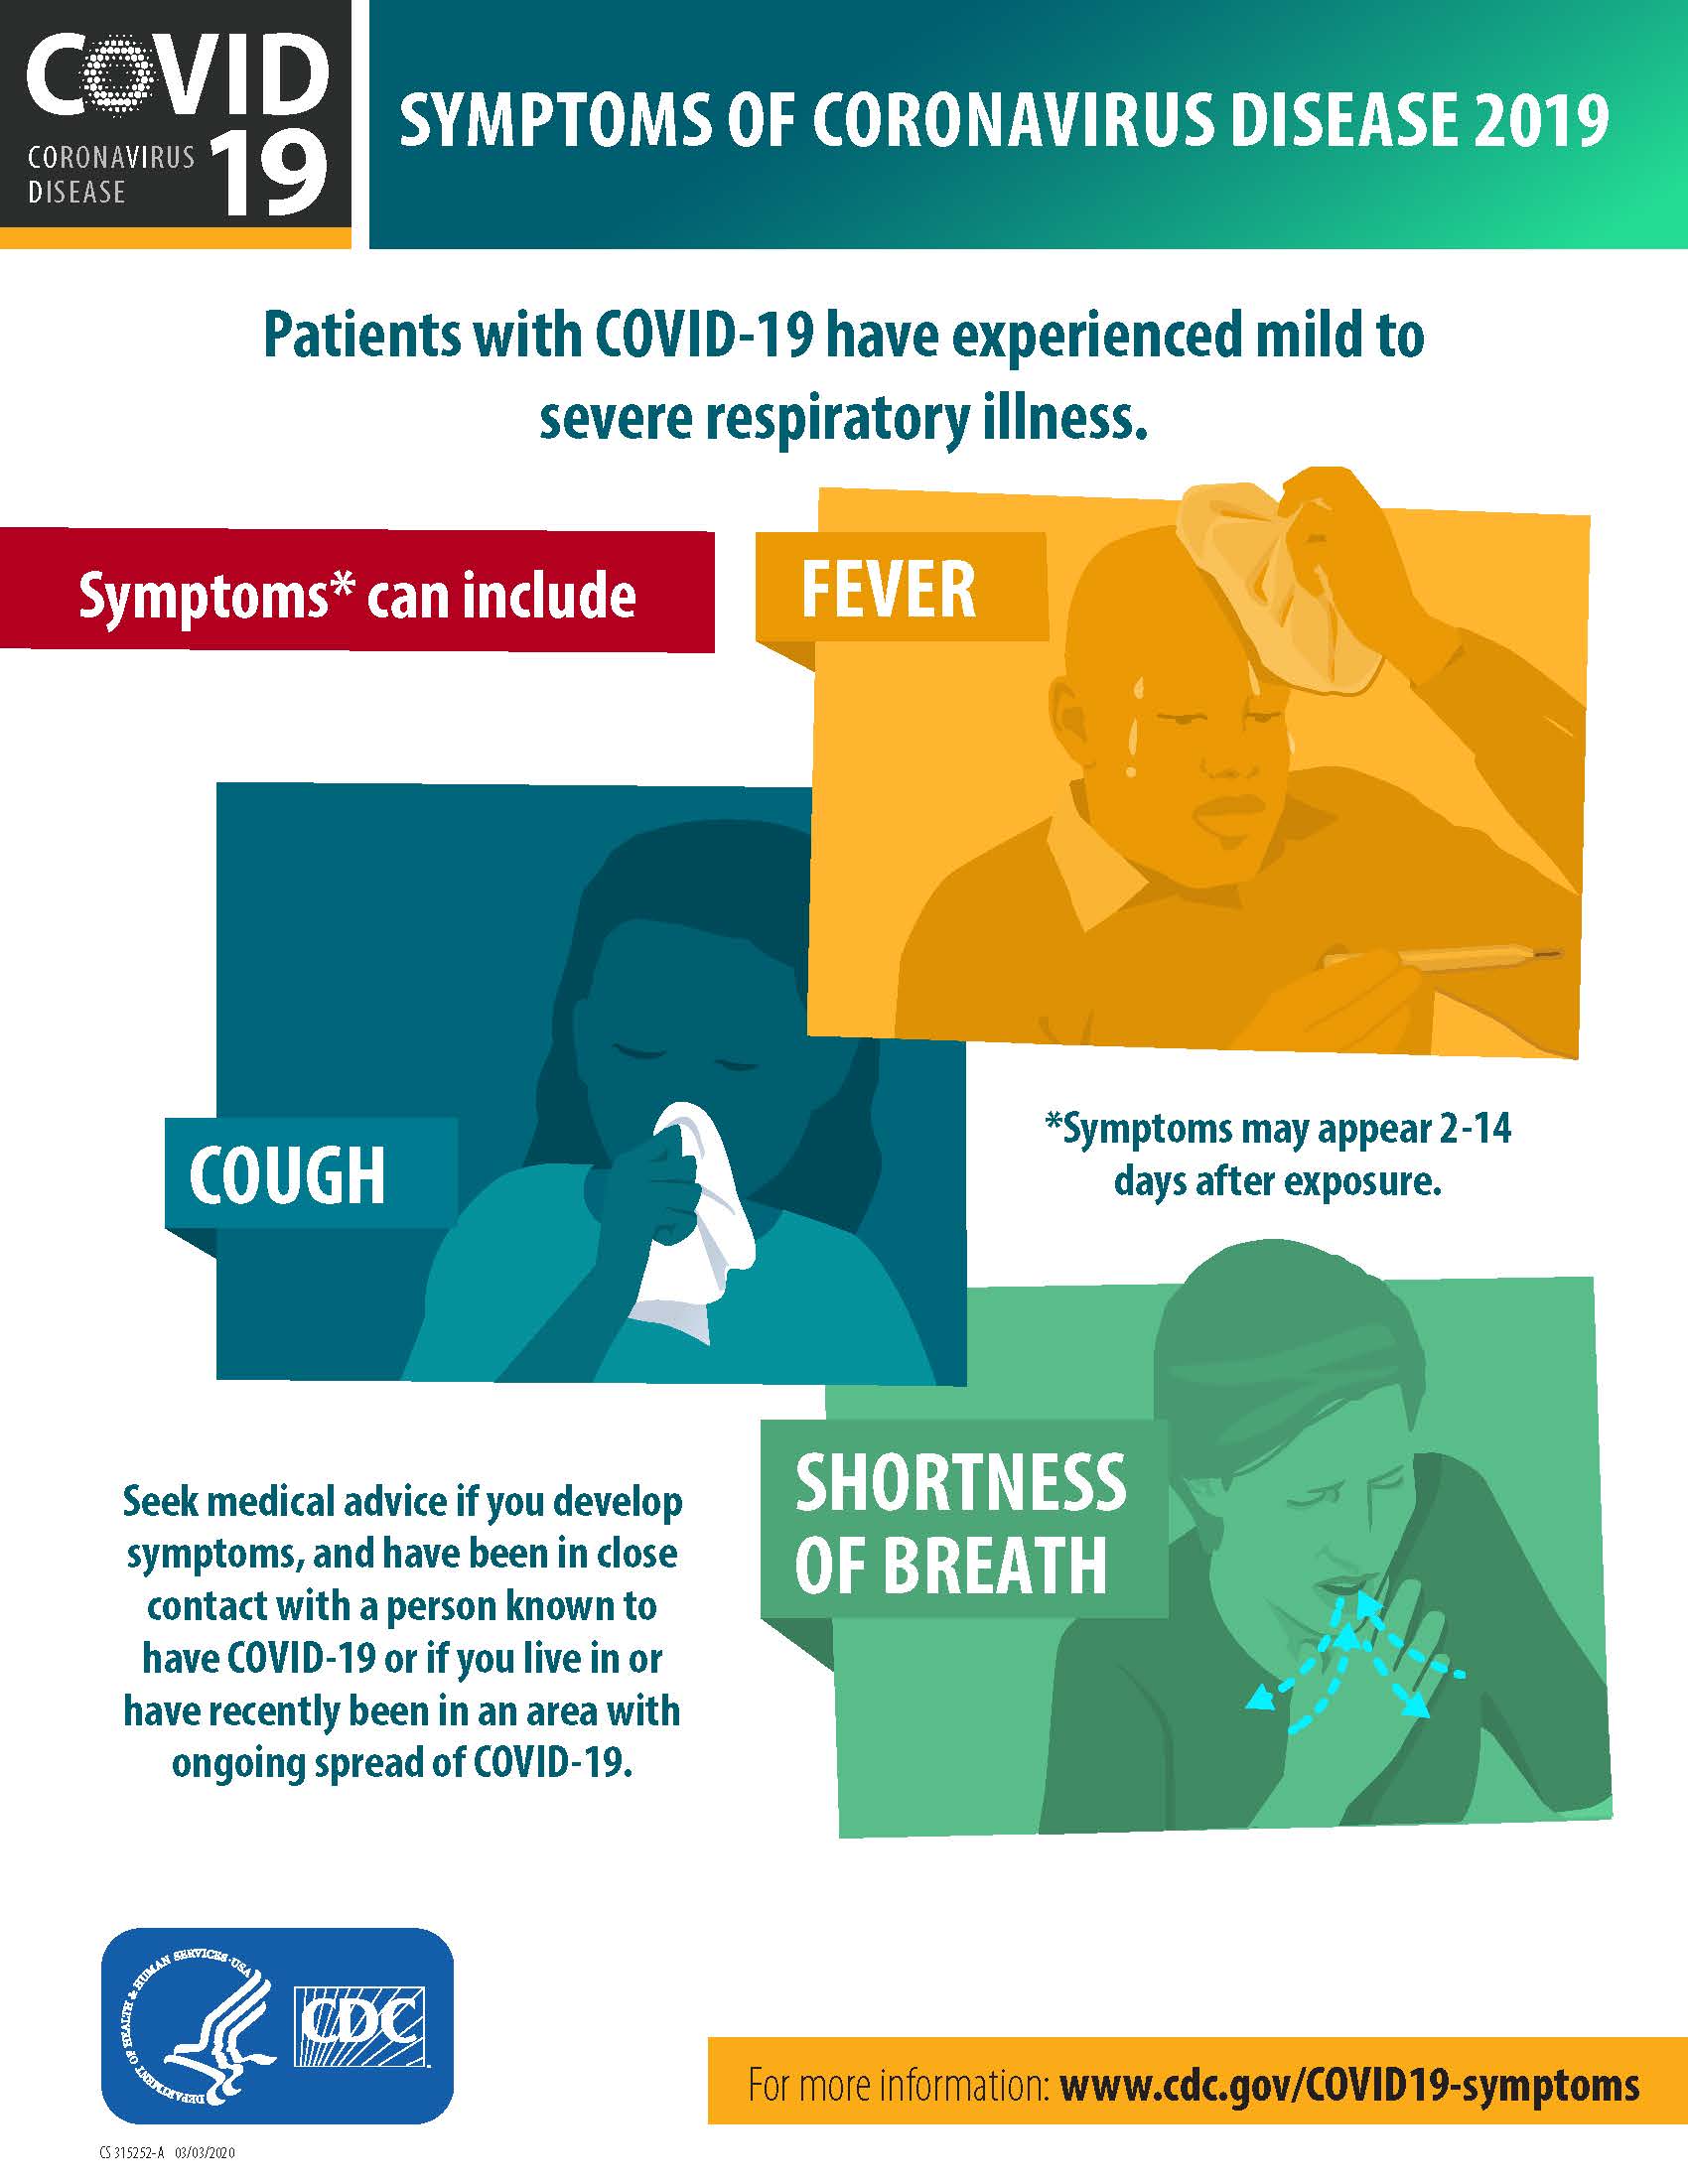 CDC COVID19 Symptoms